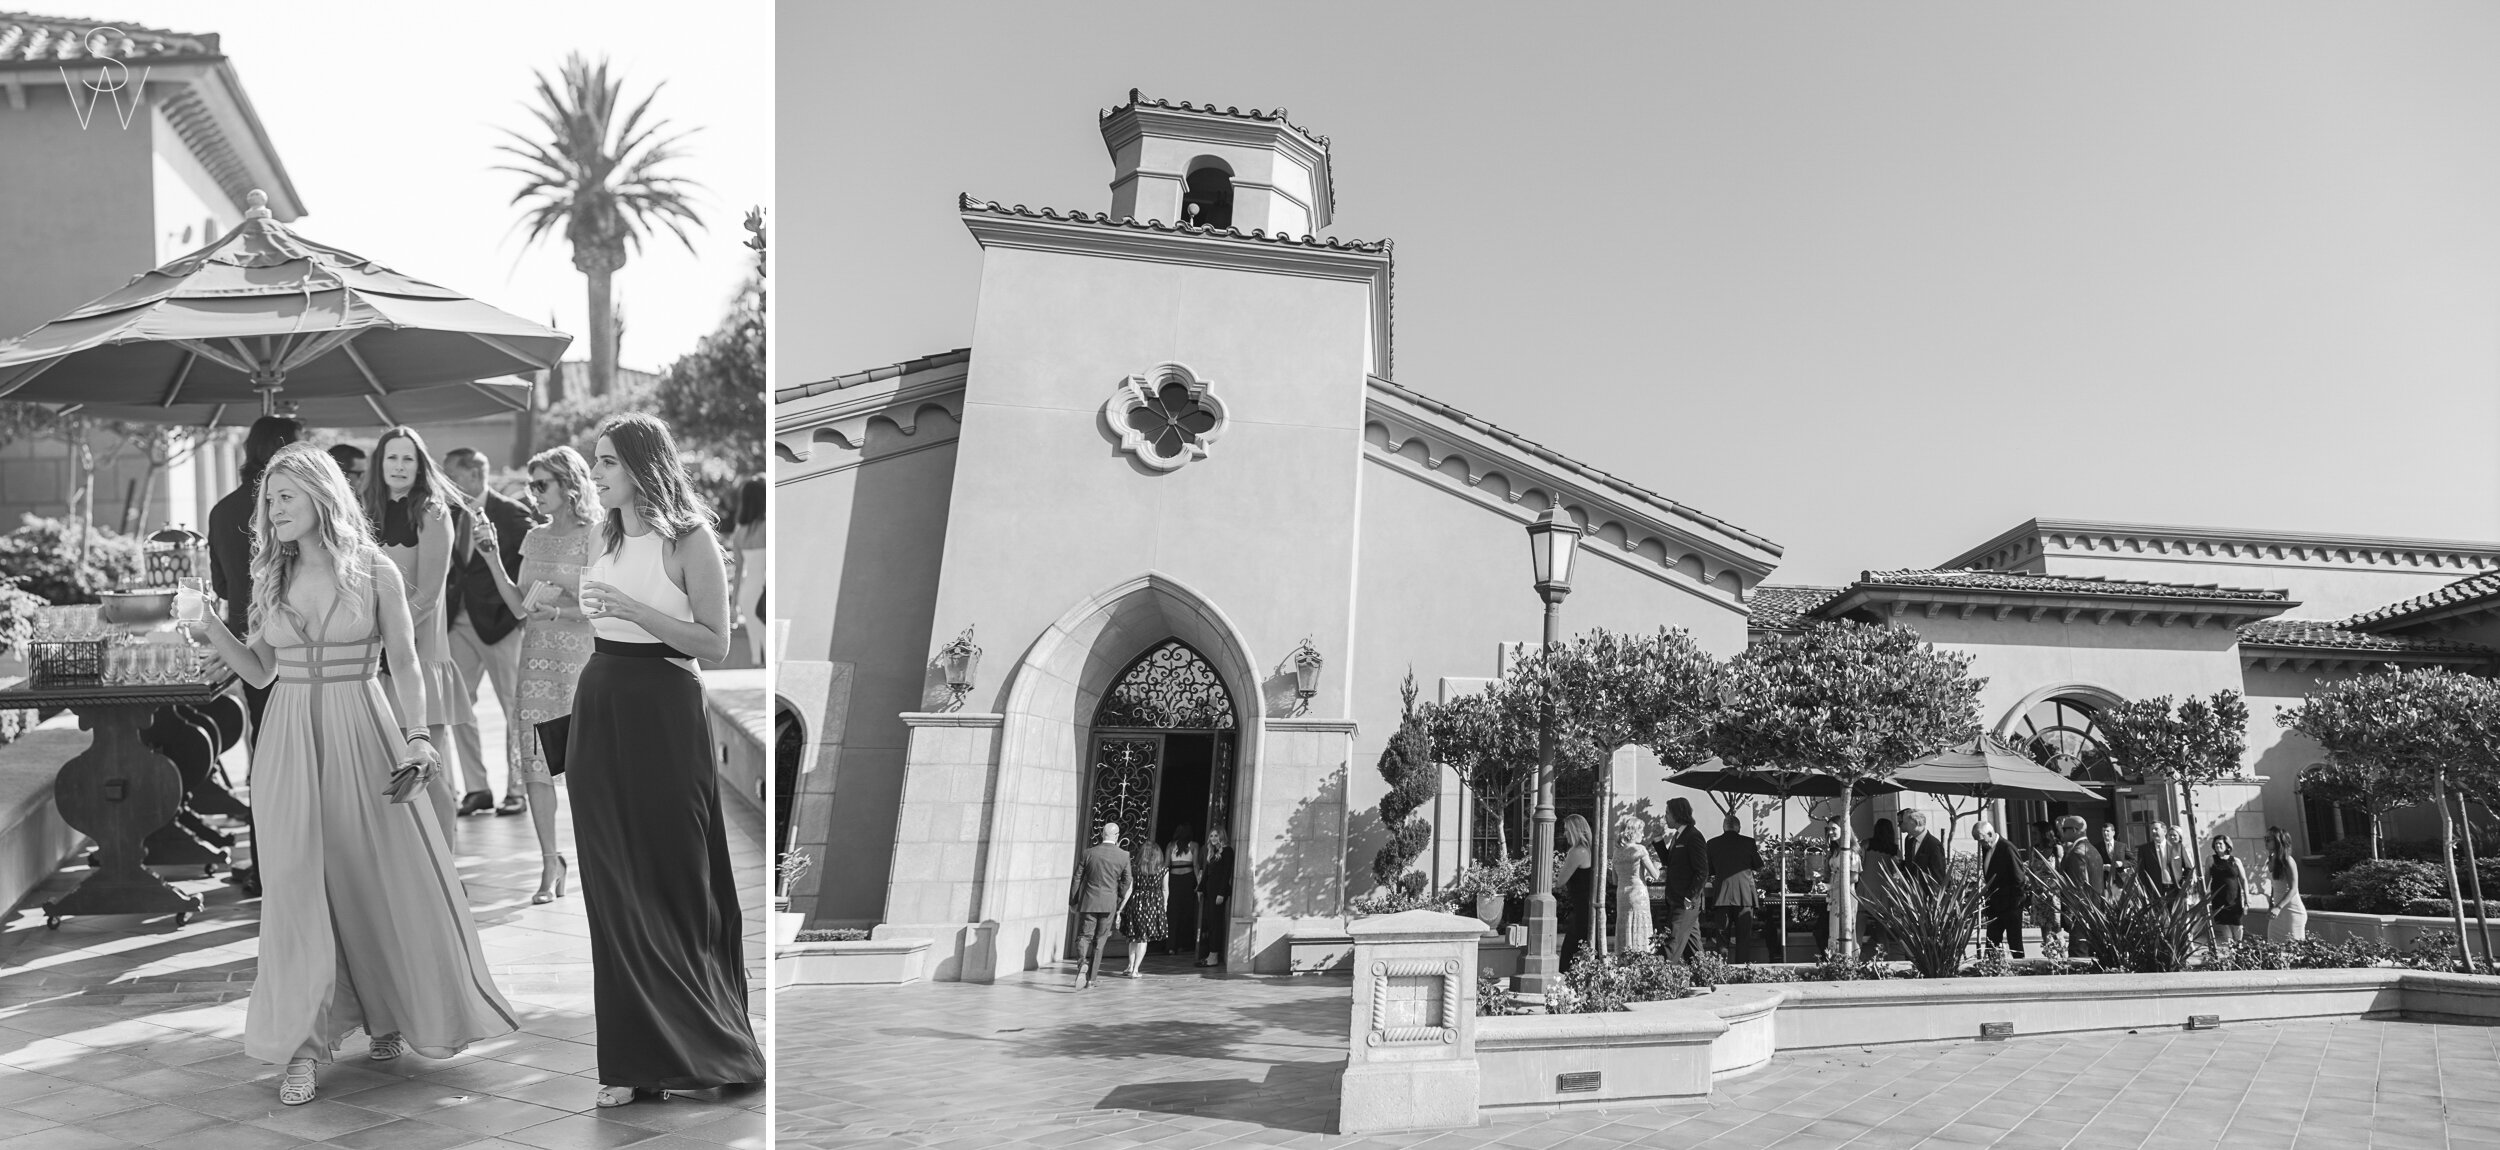 San Diego Wedding Photography Shewanders 